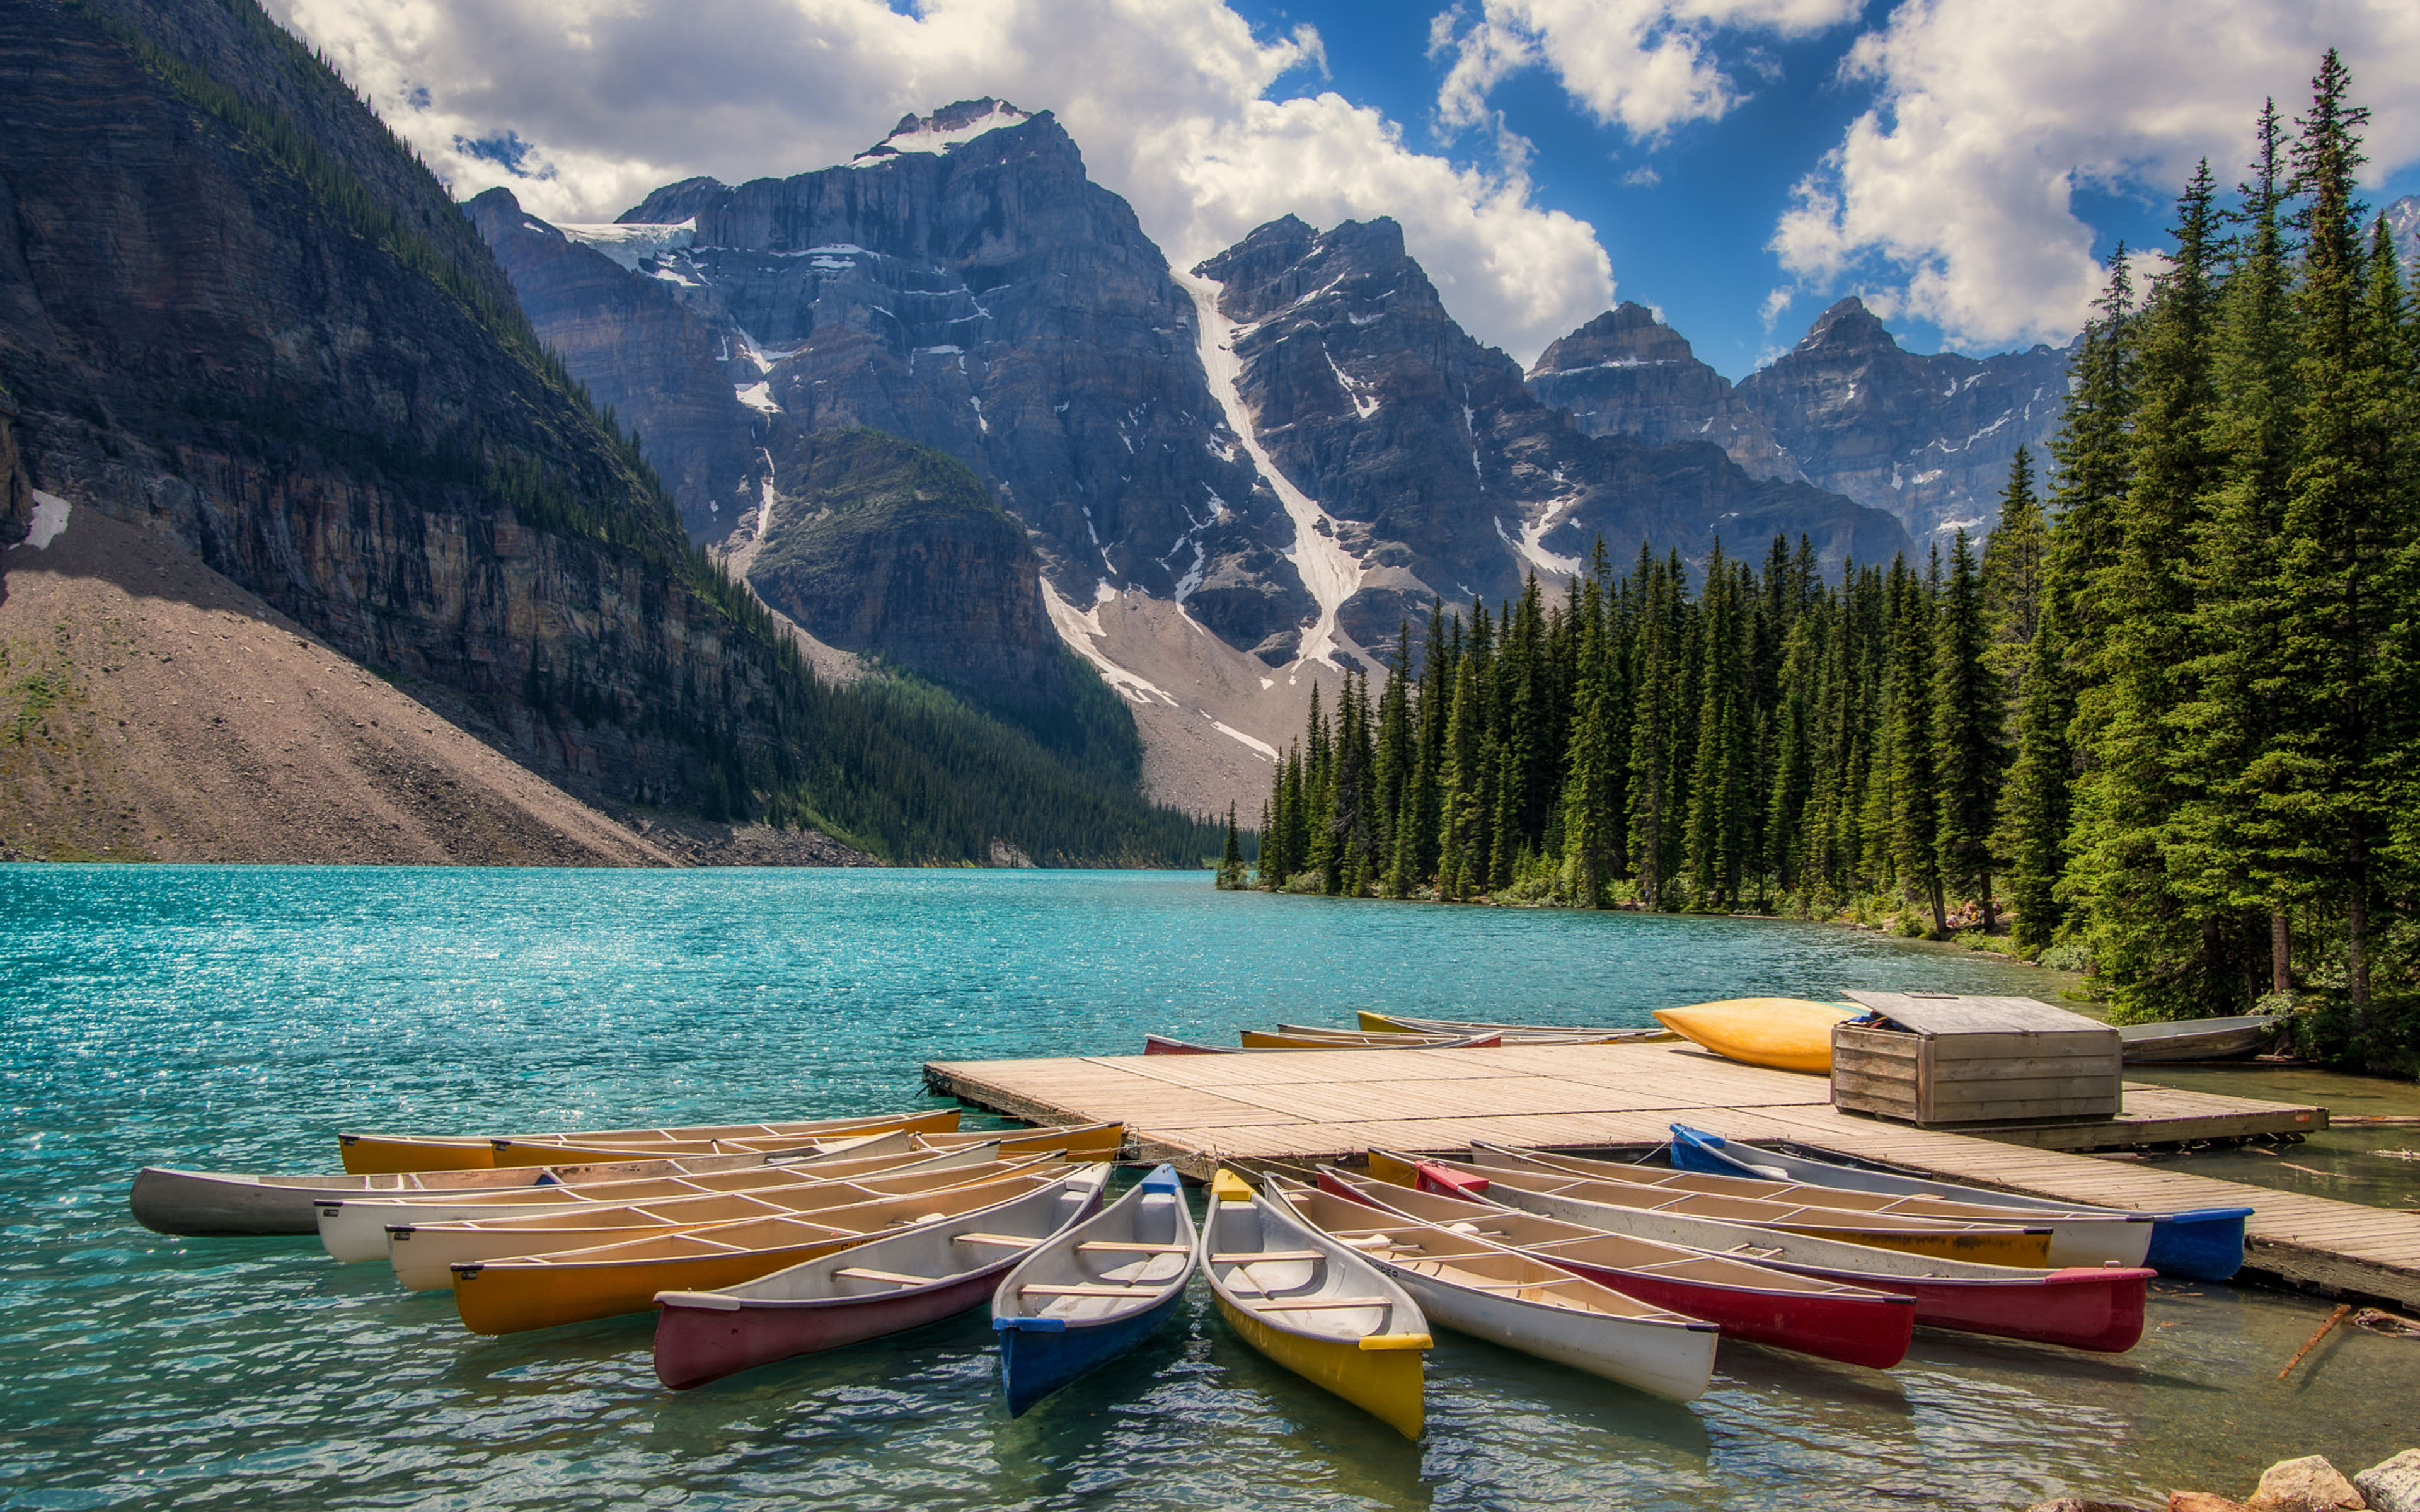 Kayaks In Lake Moraine Banff Canada Landscape Photography Ultra Hd